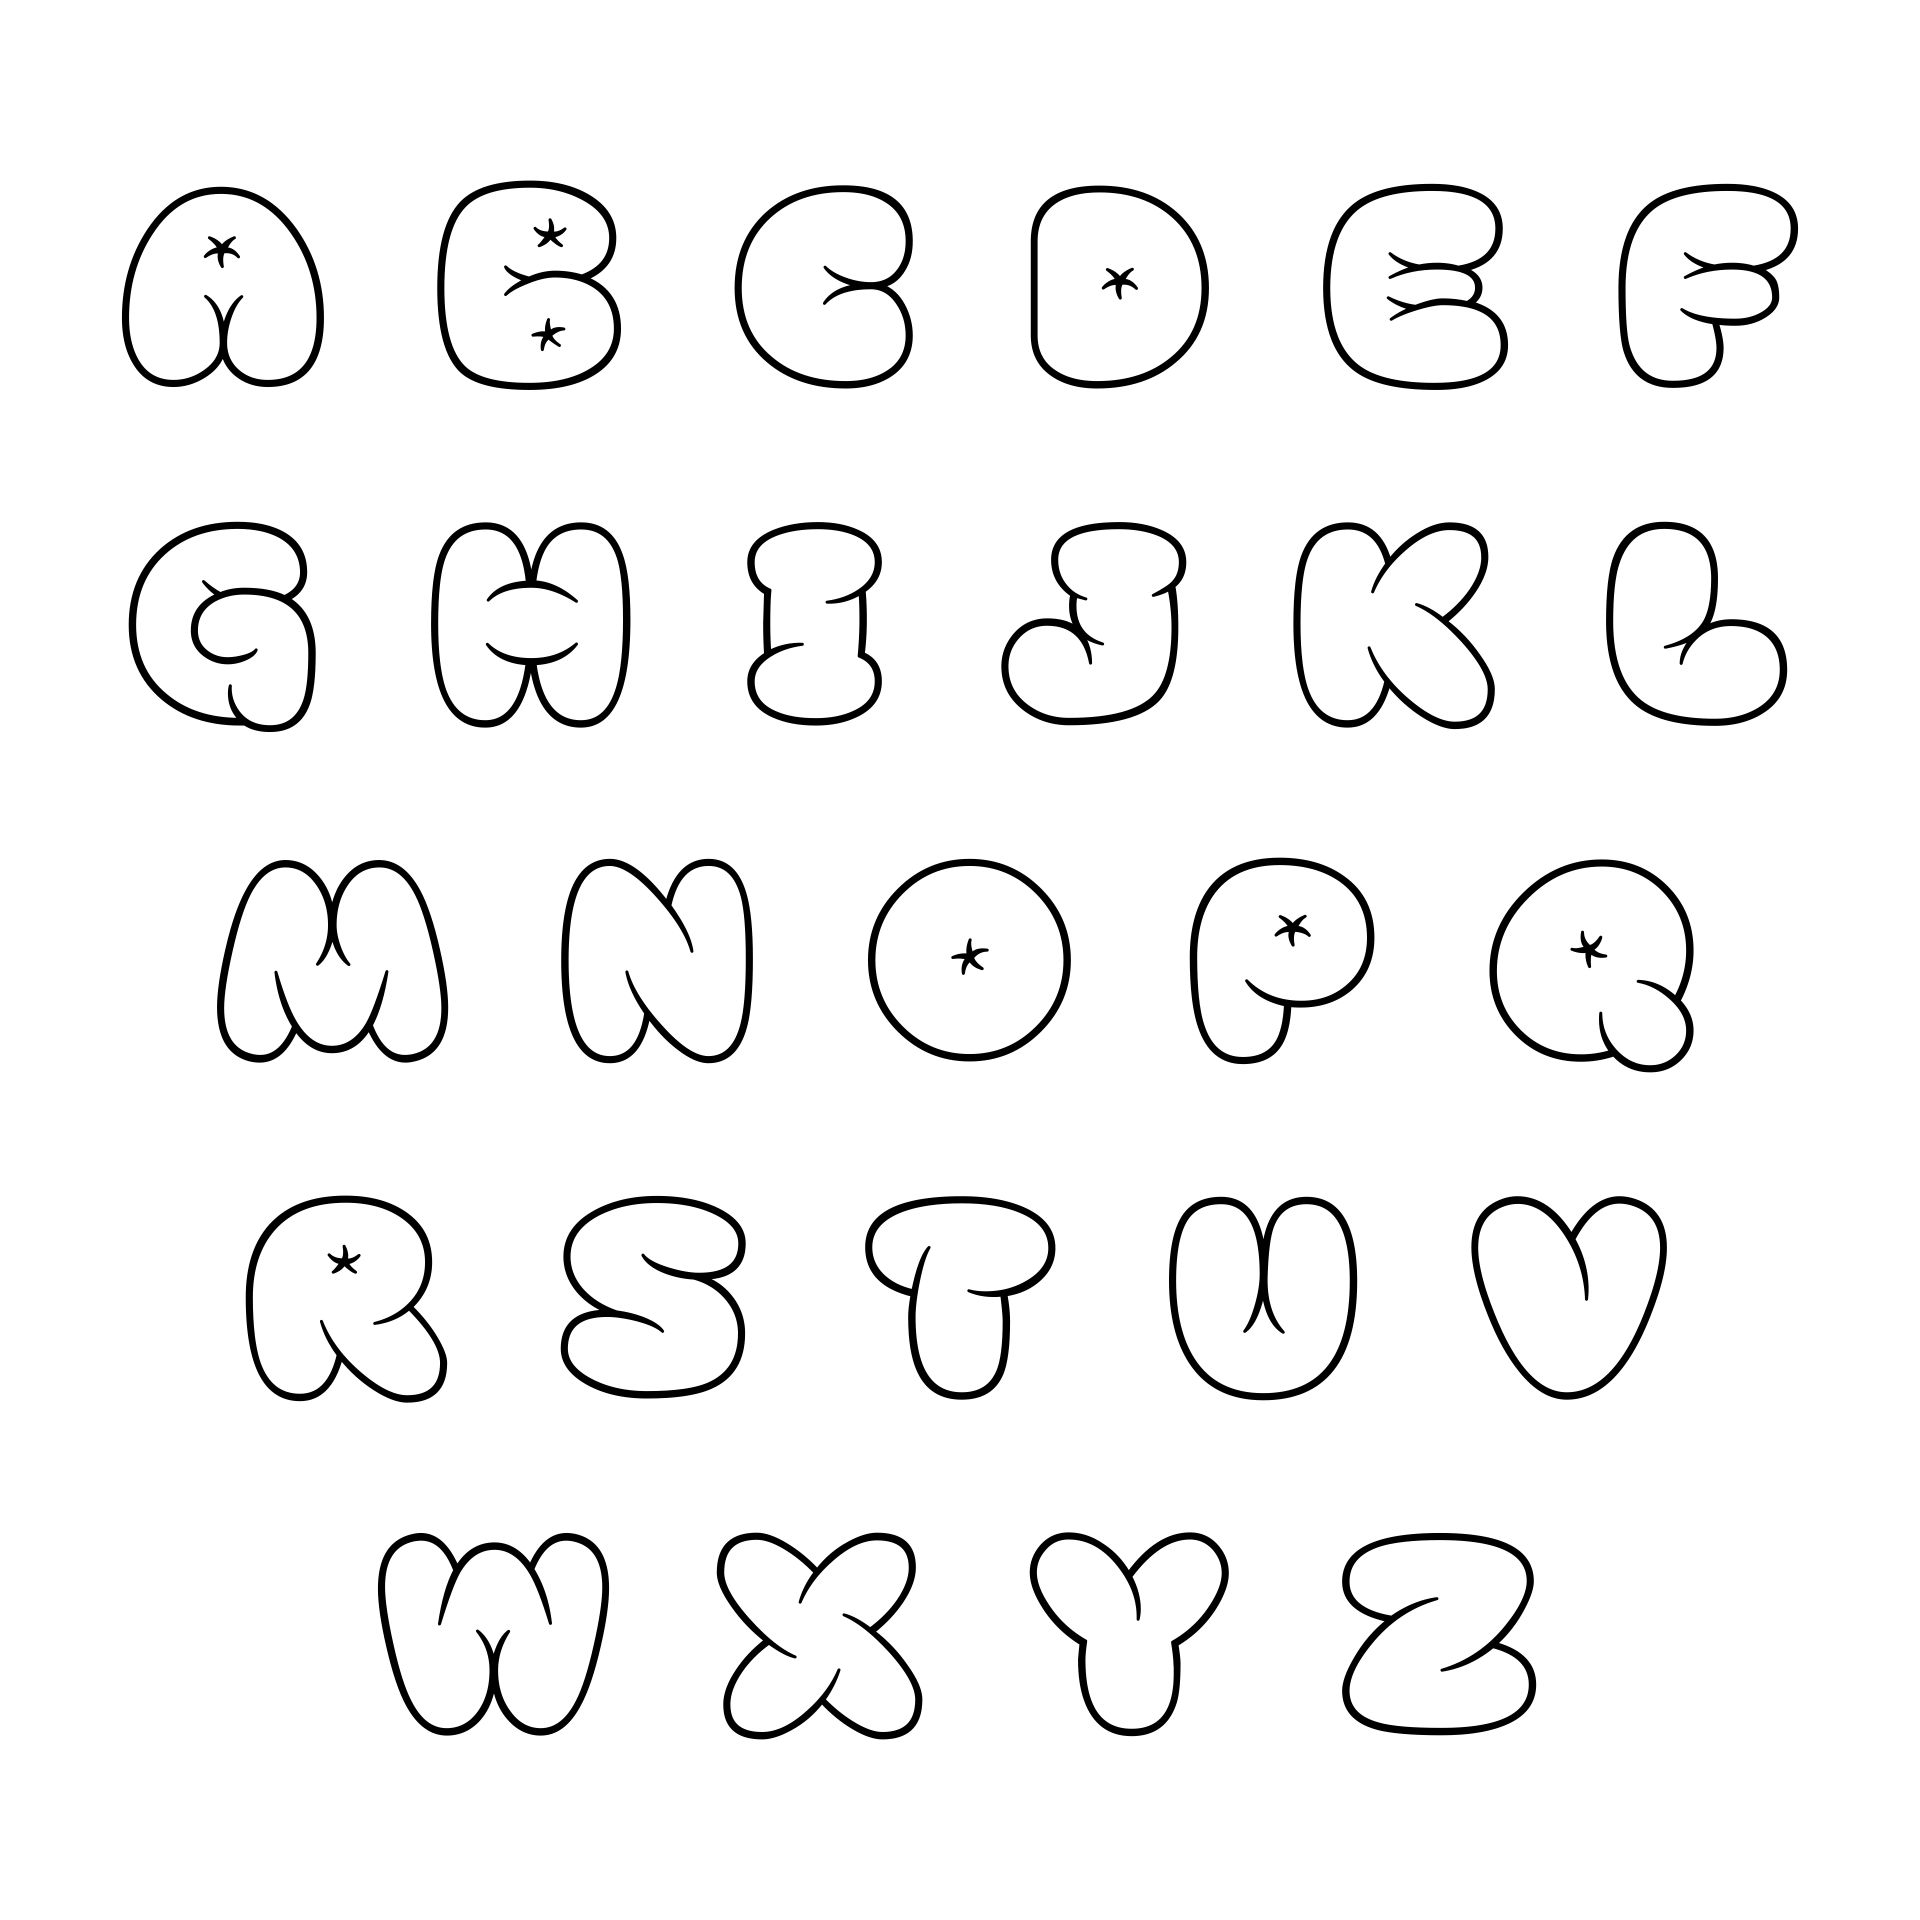 printable bubble letters font